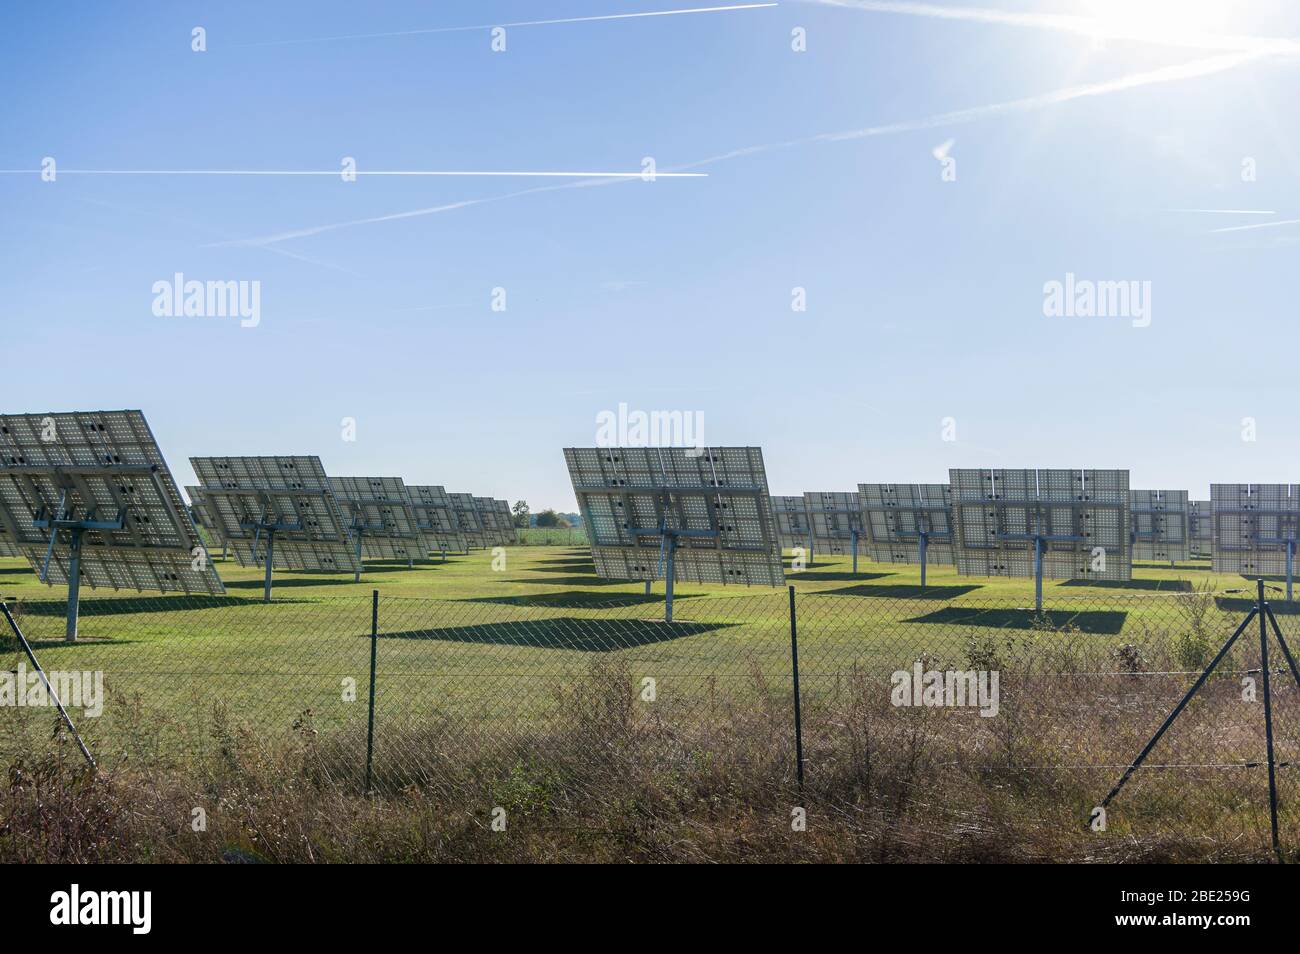 Système solaire, vue d'ensemble Centrale solaire avec éléments trackables en soleil vue arrière Banque D'Images